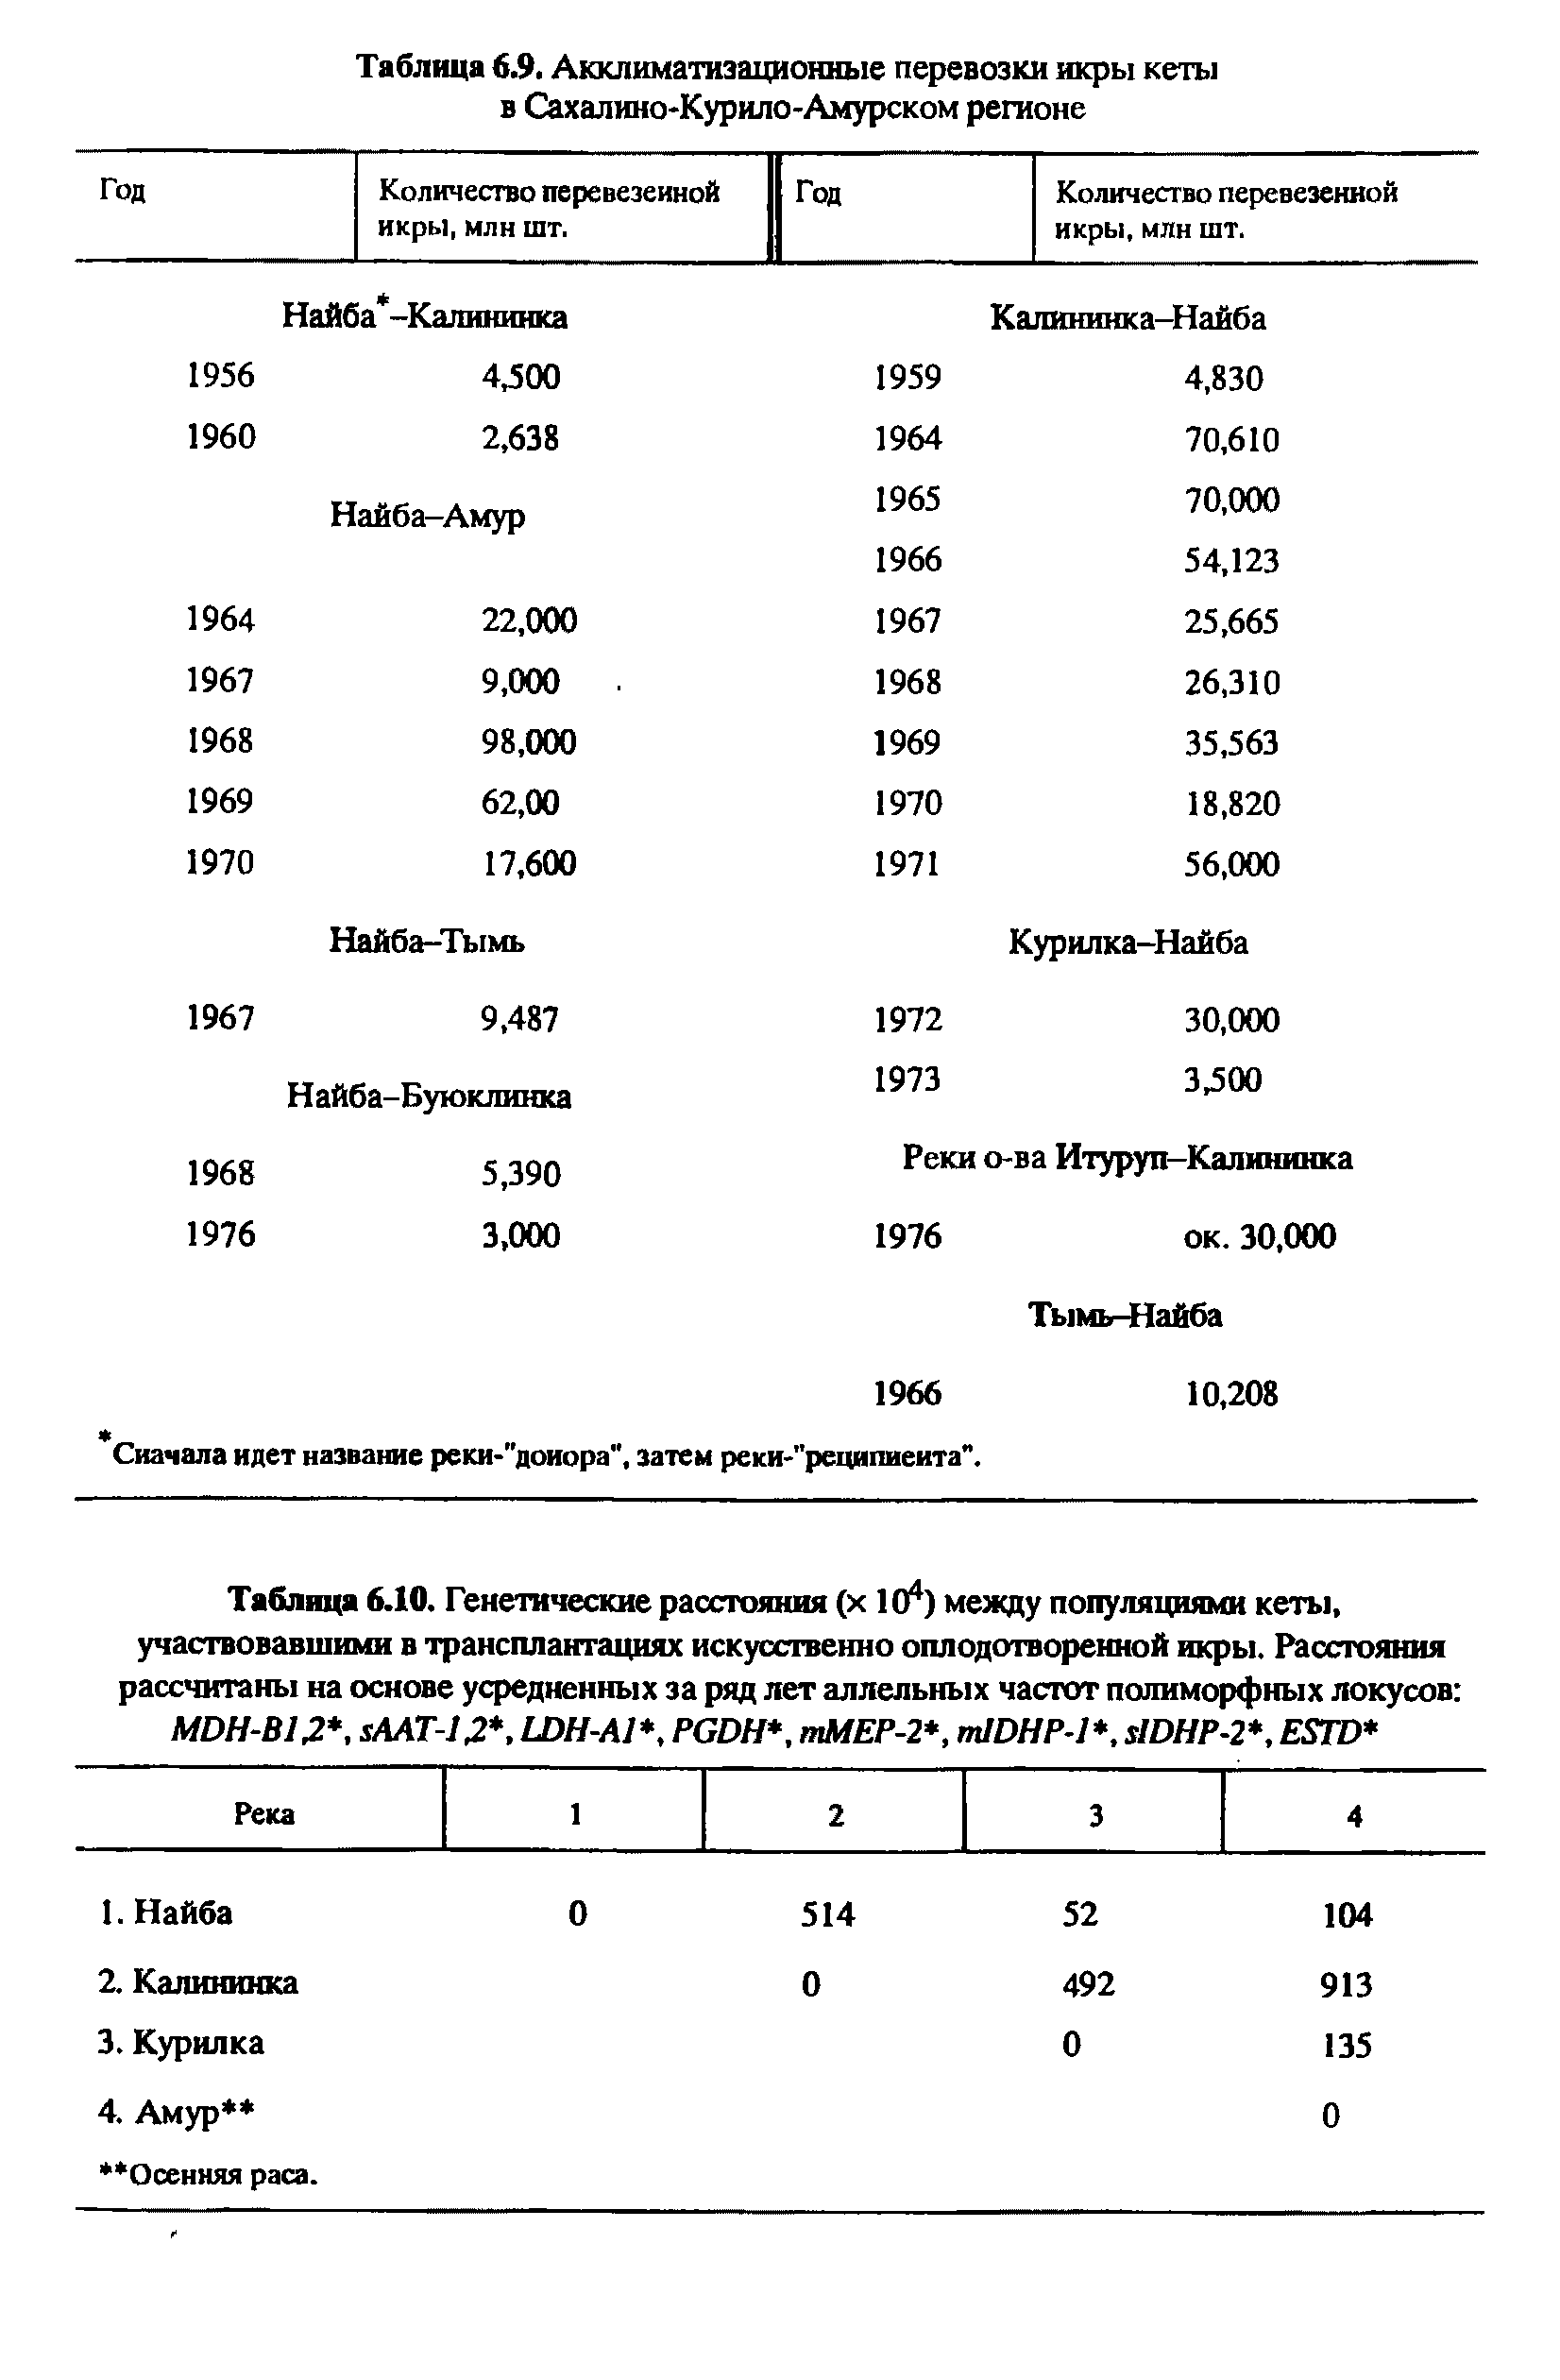 Таблица 6.10. Генетические расстояния (х 104) между популяциями кеты, участвовавшими в трансплантациях искусственно оплодотворенной икры. Расстояния рассчитаны на основе усредненных за ряд лет аллельных частот полиморфных локусов МОН-В1.2, хААТ-12, И)Н-А1, РСйН, тМЕР-2, тЮНР- , И)НР-2, Е8Тй ...